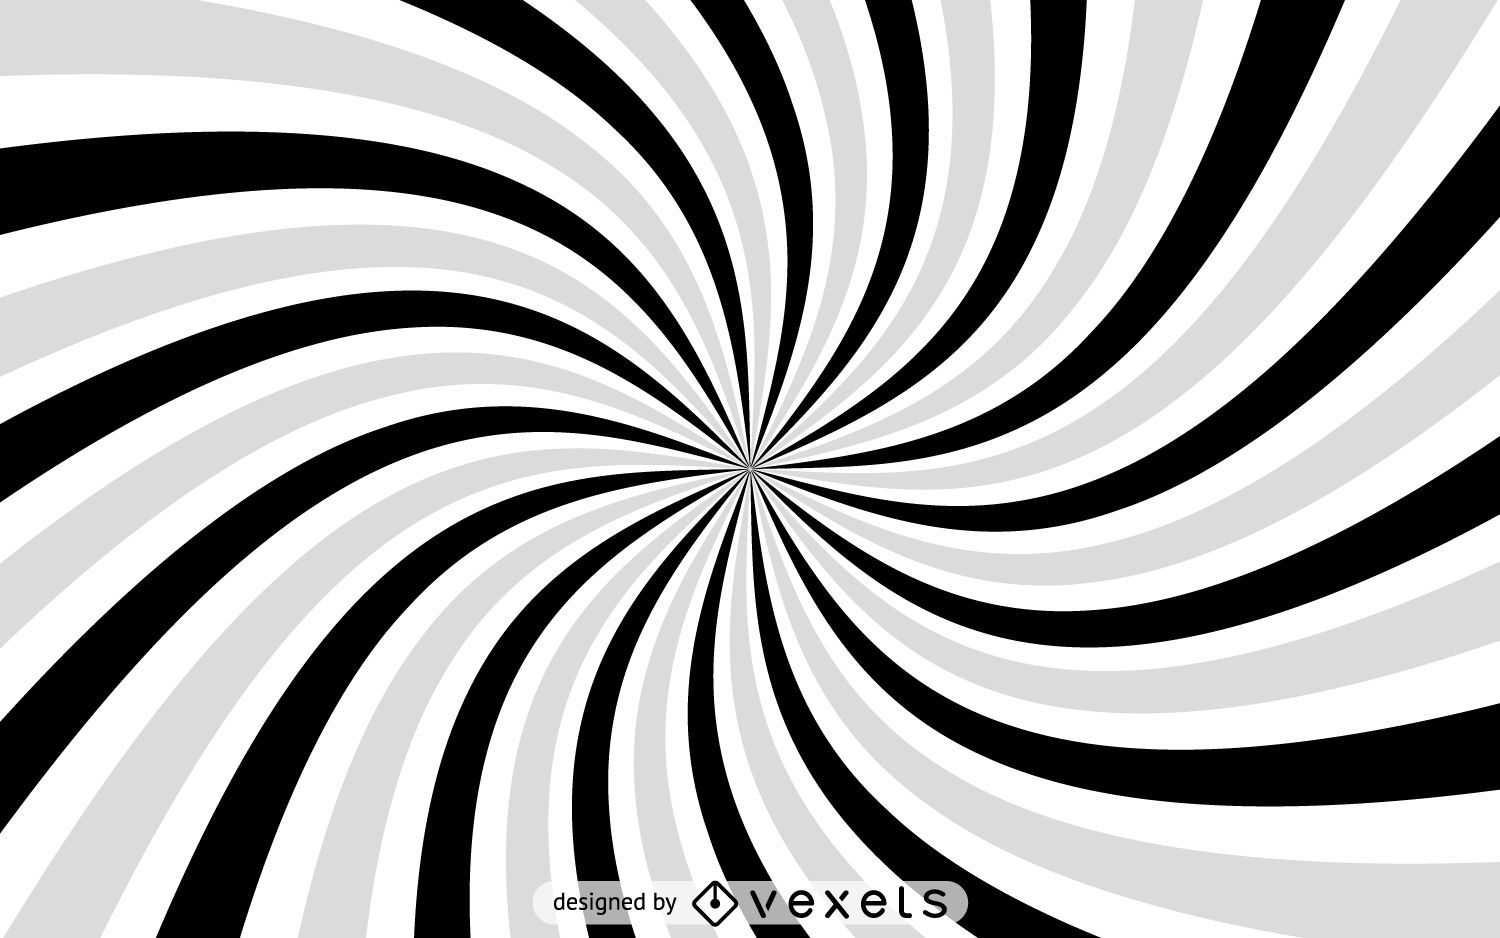 Gray spiral starburst background